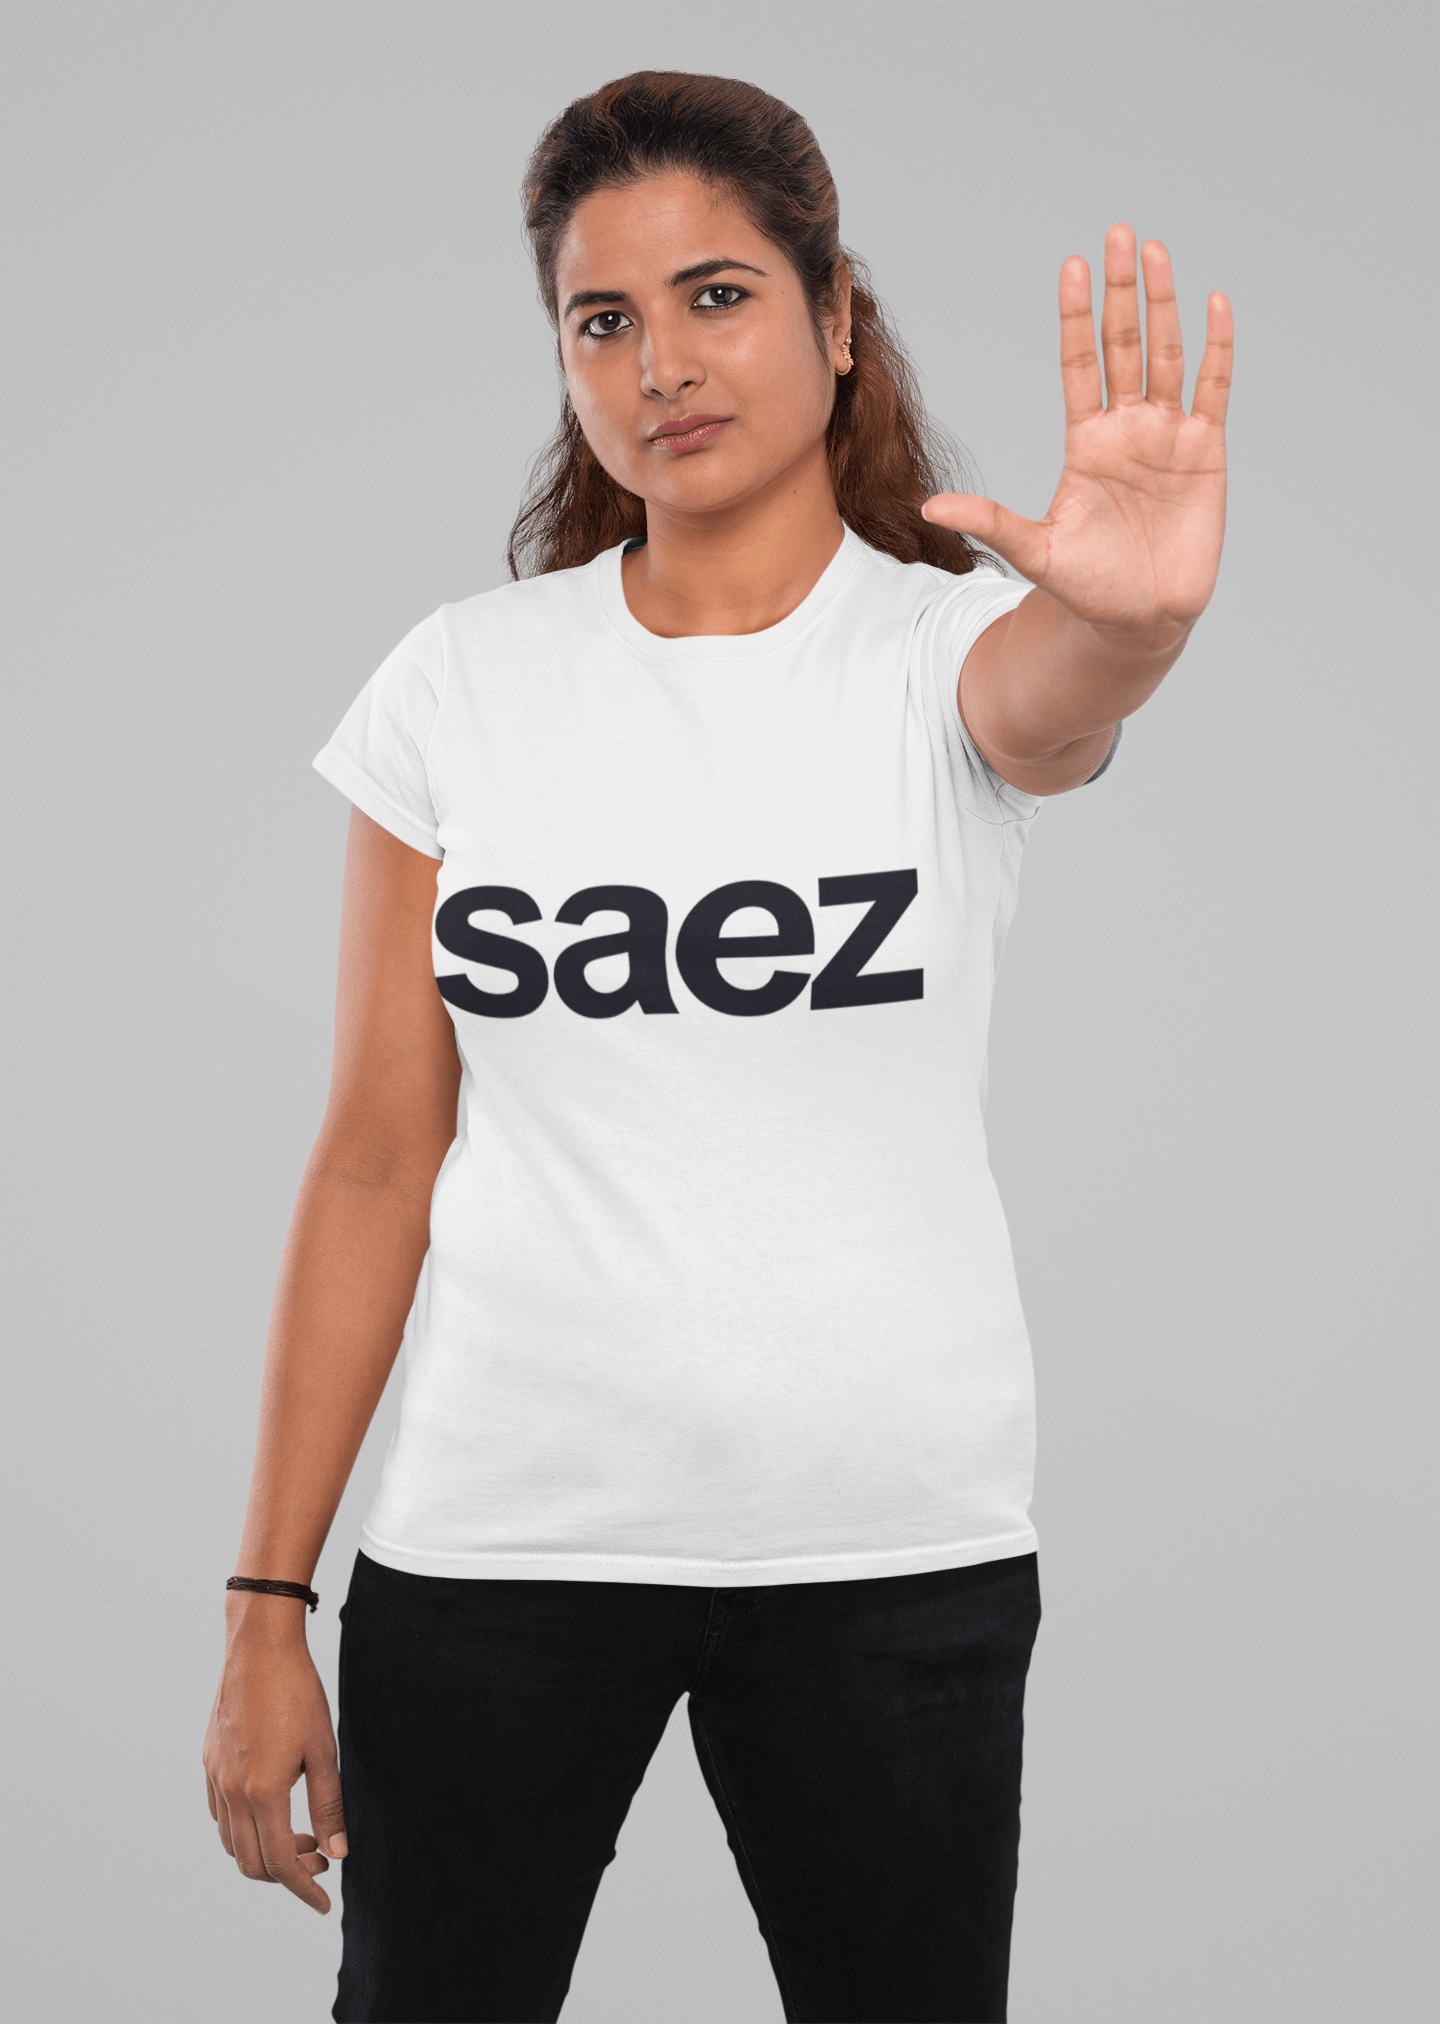 Saez Women's Short Sleeve Crew neck Tee 00036